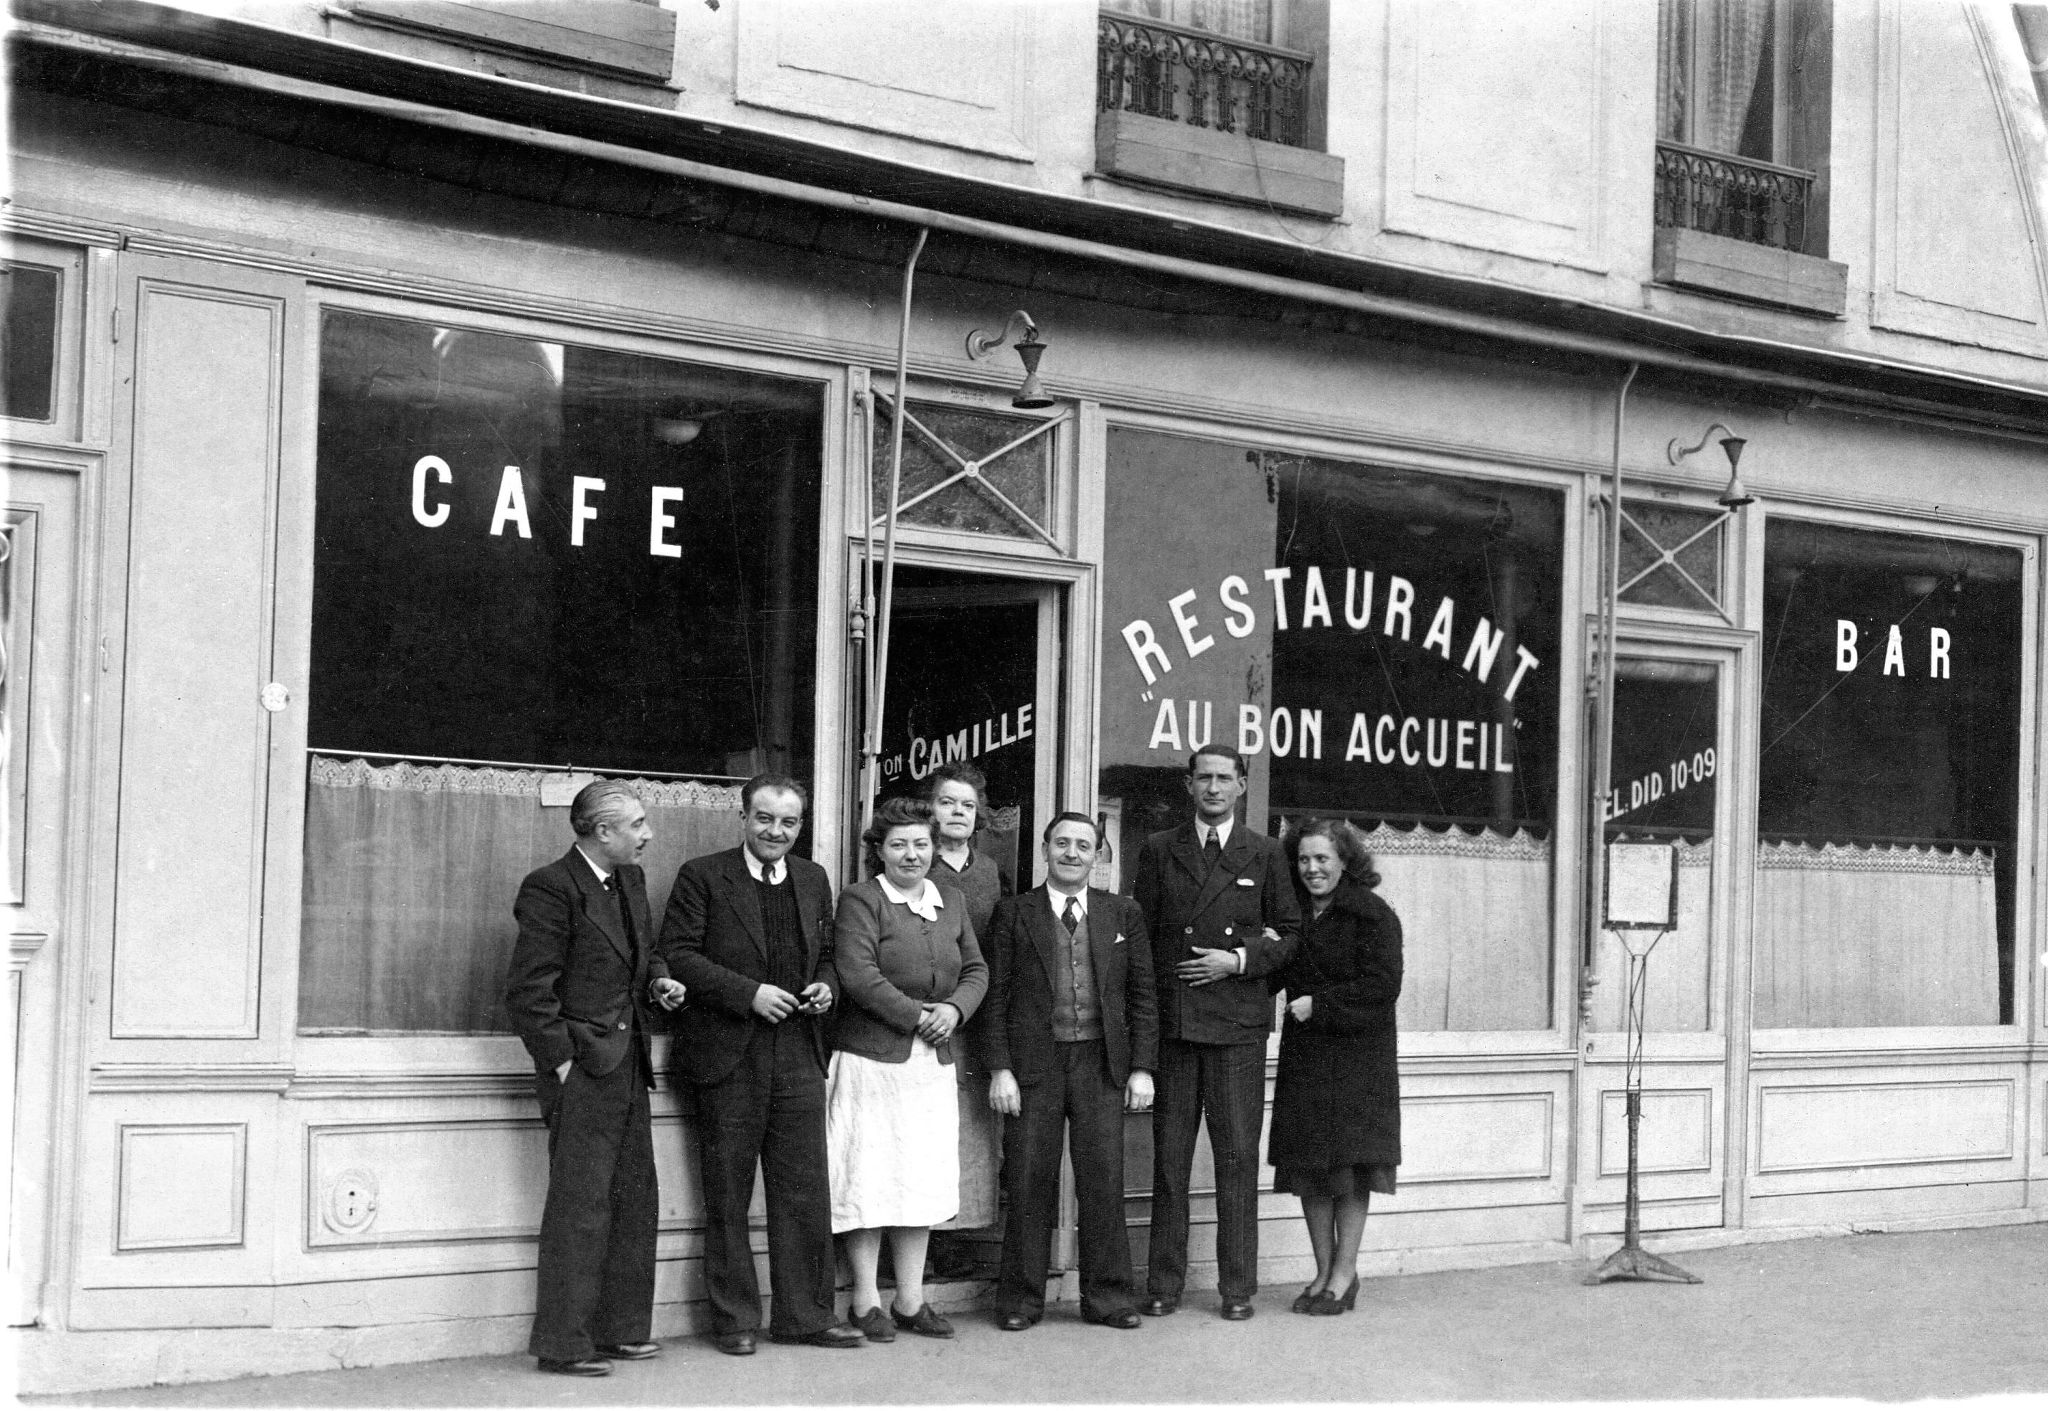 Café Restaurant Au Bon Accueil. Maison Camille